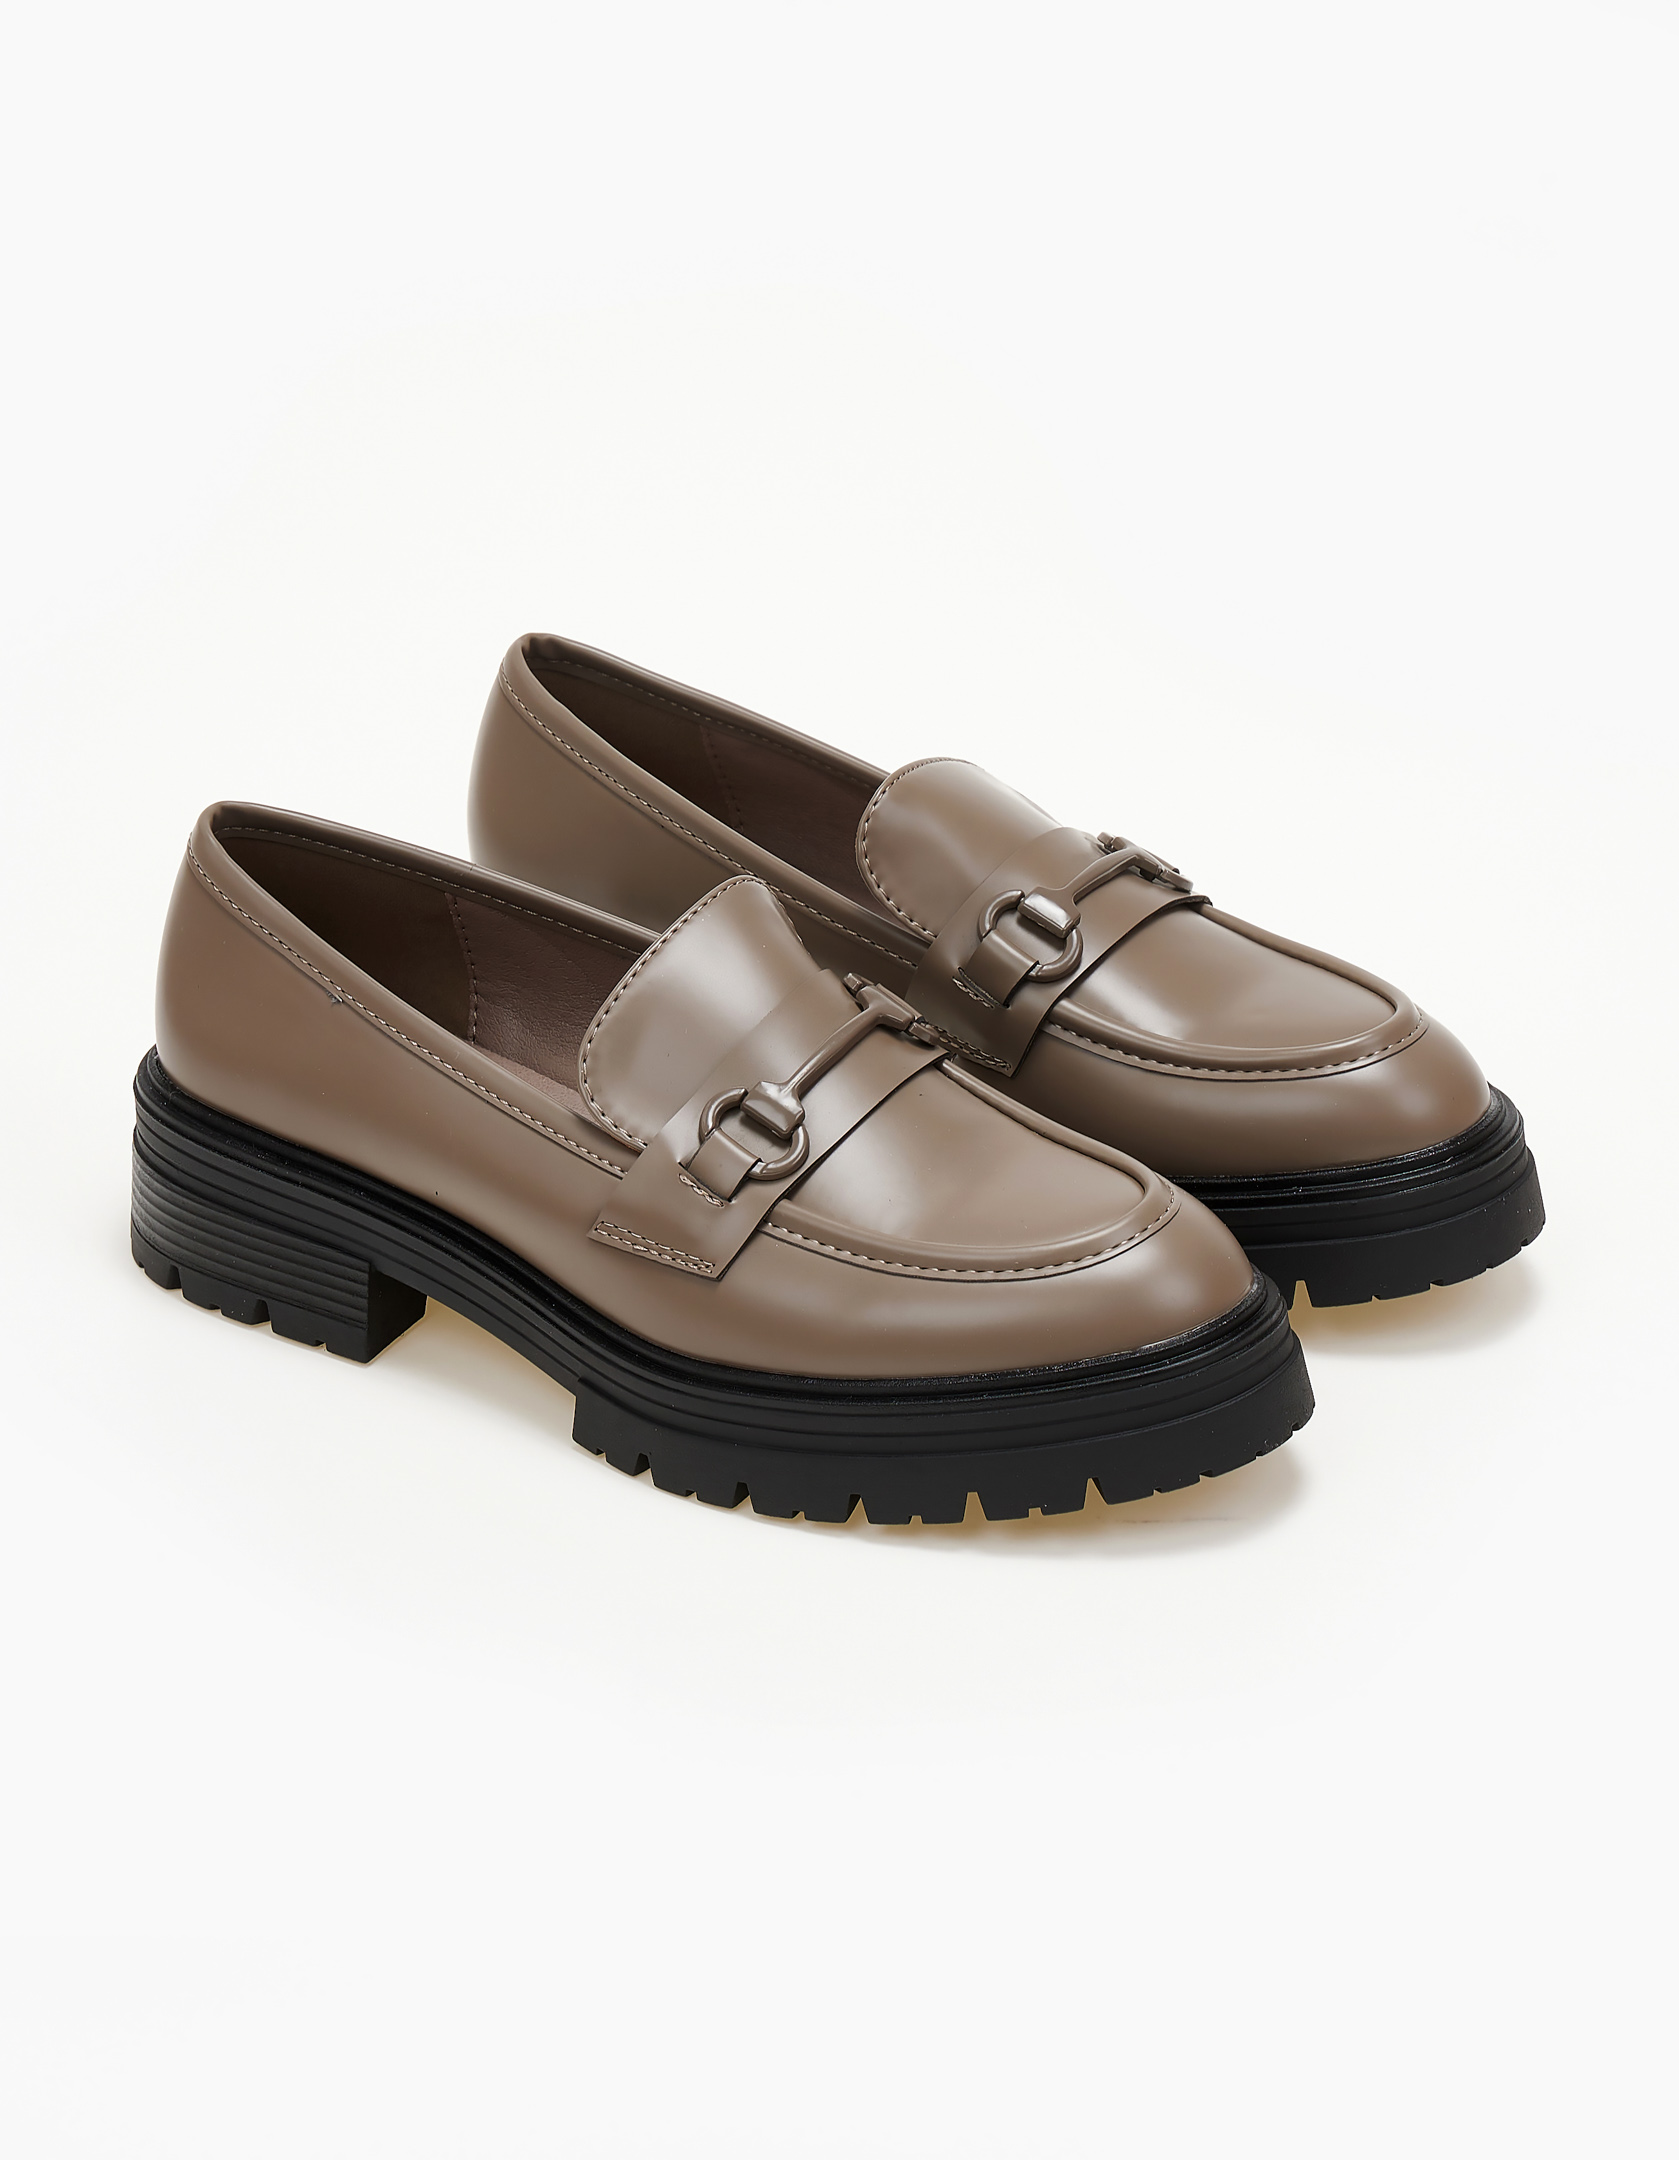 Παπούτσια > Loafers Loafers με τρακτερωτή σόλα - Πούρο